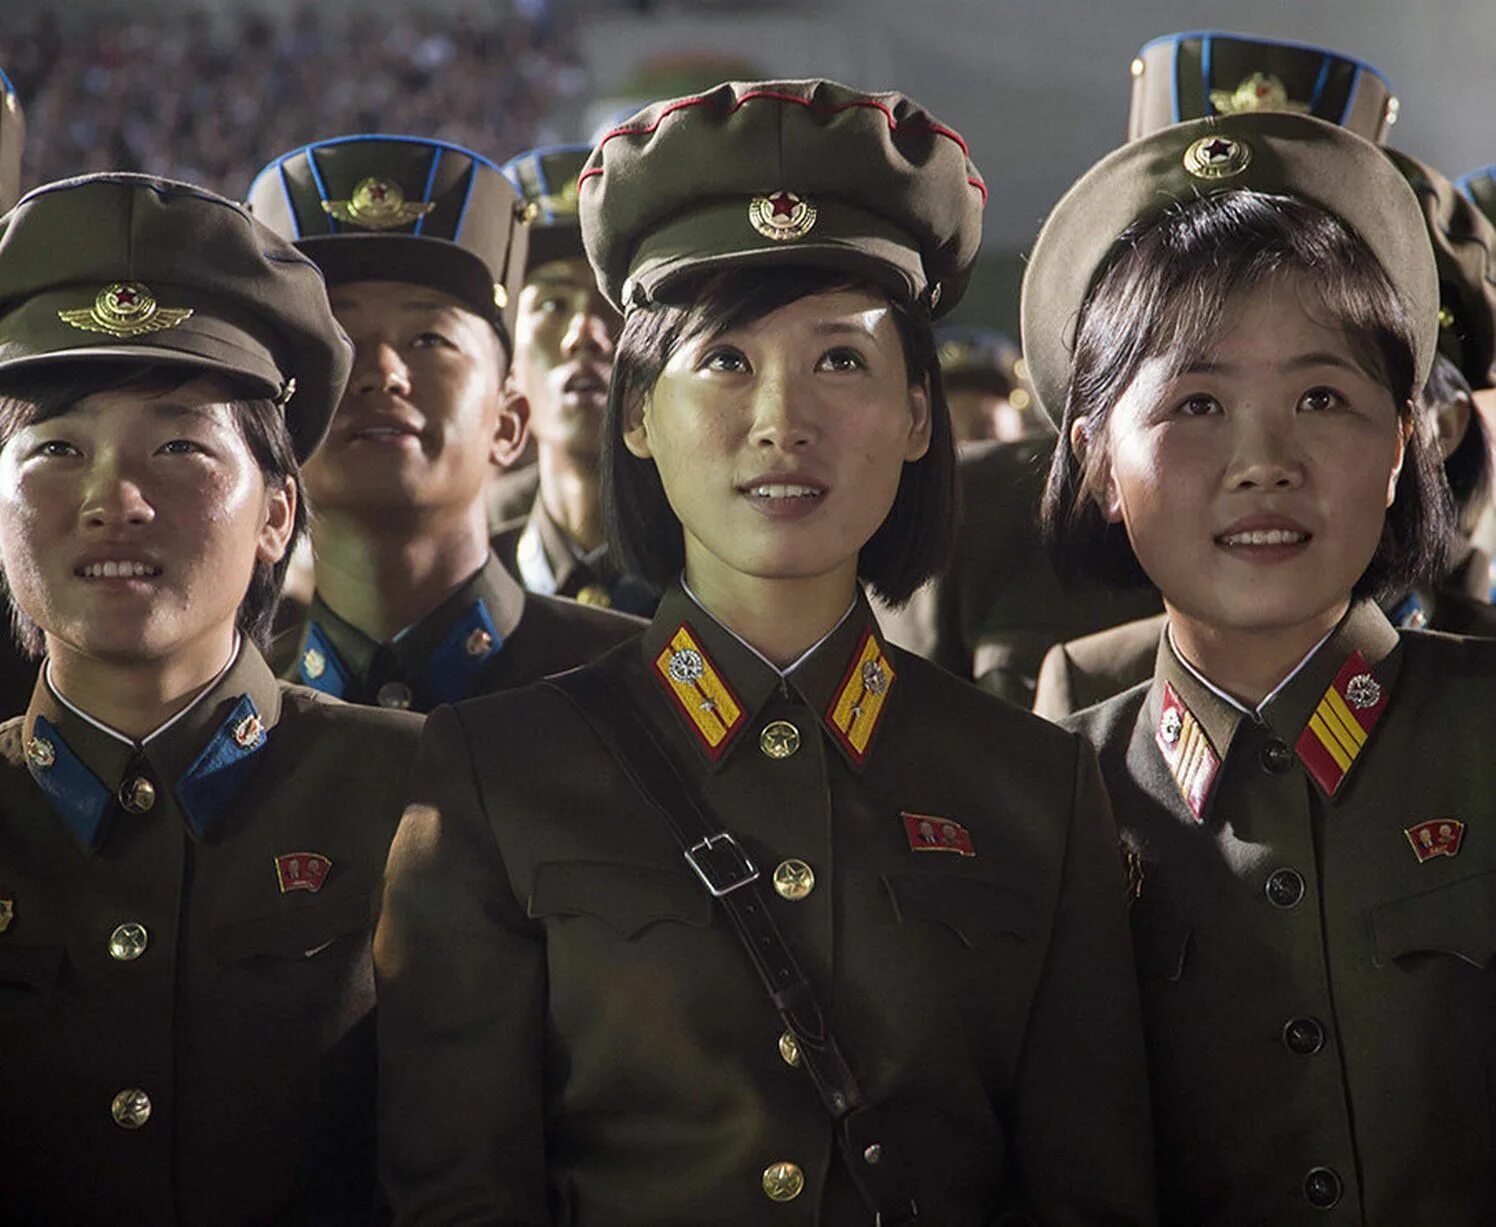 Сколько северной корее. КНДР Северная Корея. Нортх Корея. Киппымчо Северная Корея. Армия Северной Кореи.